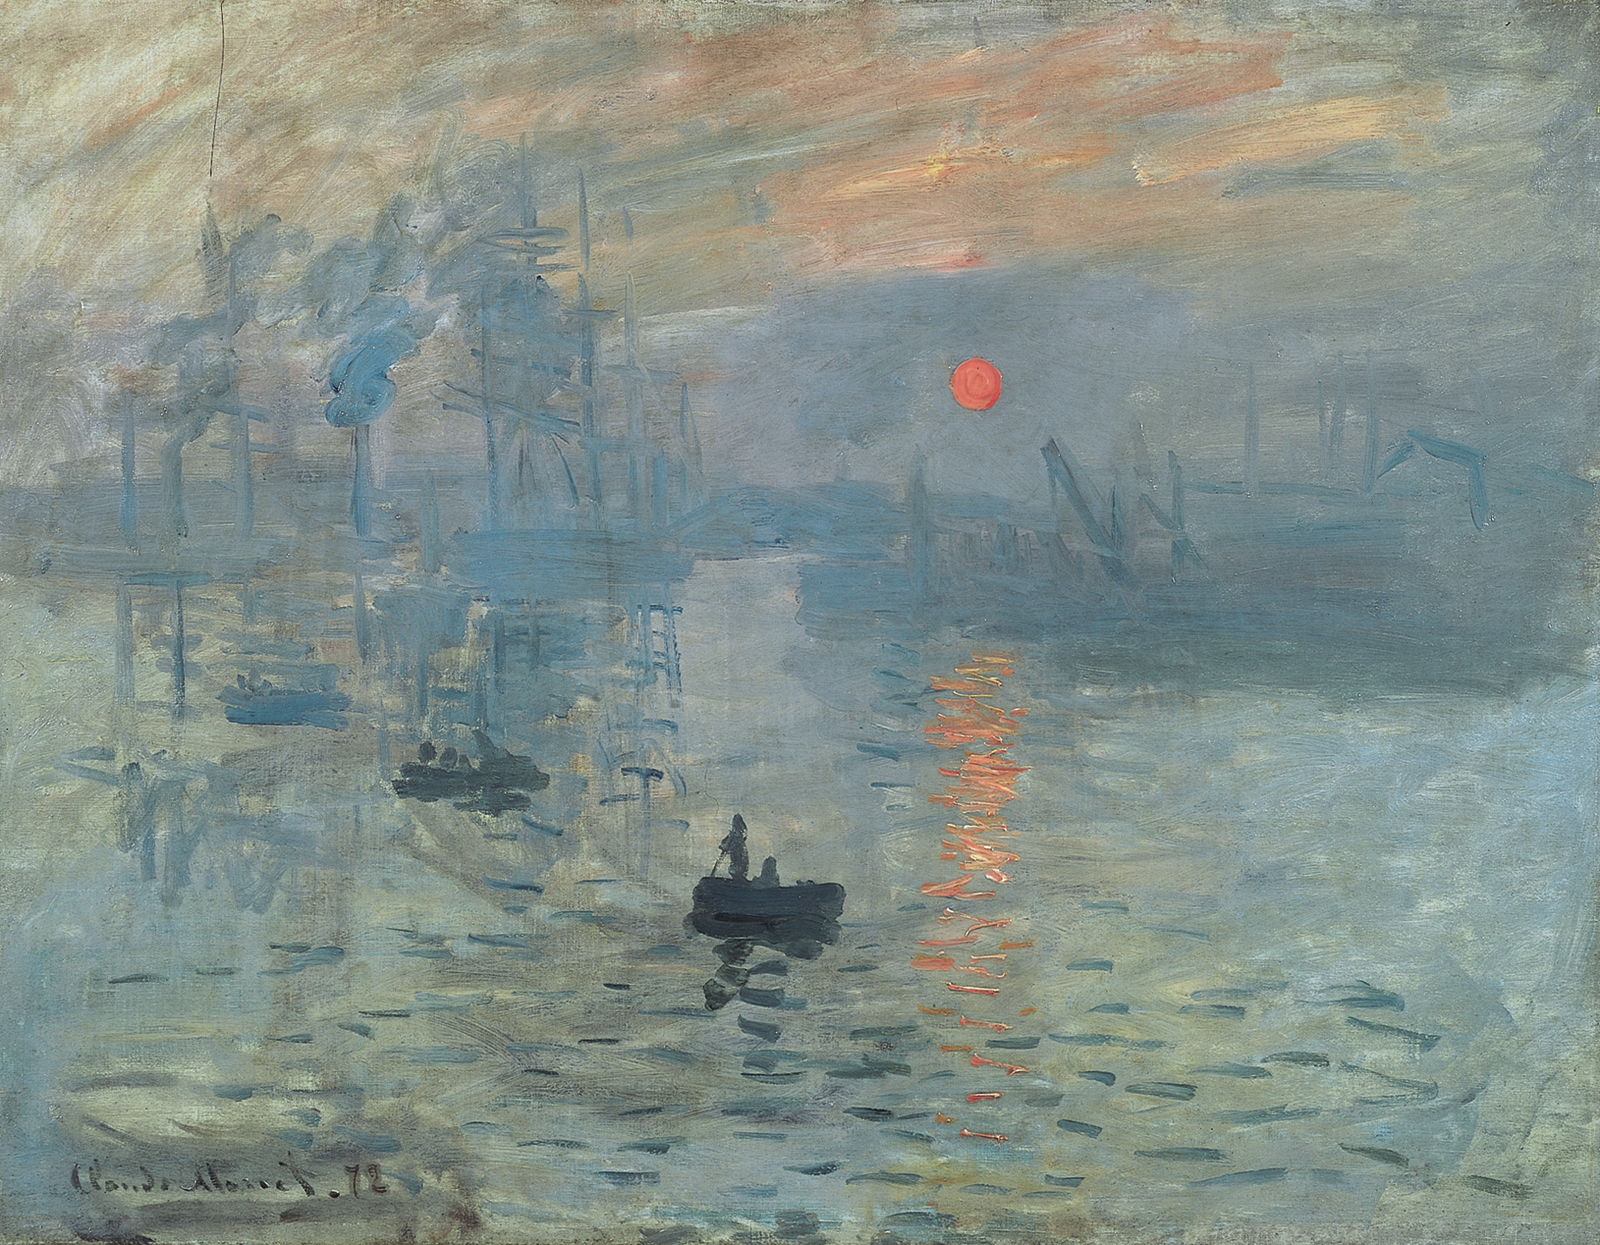 Claude Monet – Impression, Sunrise (1872)